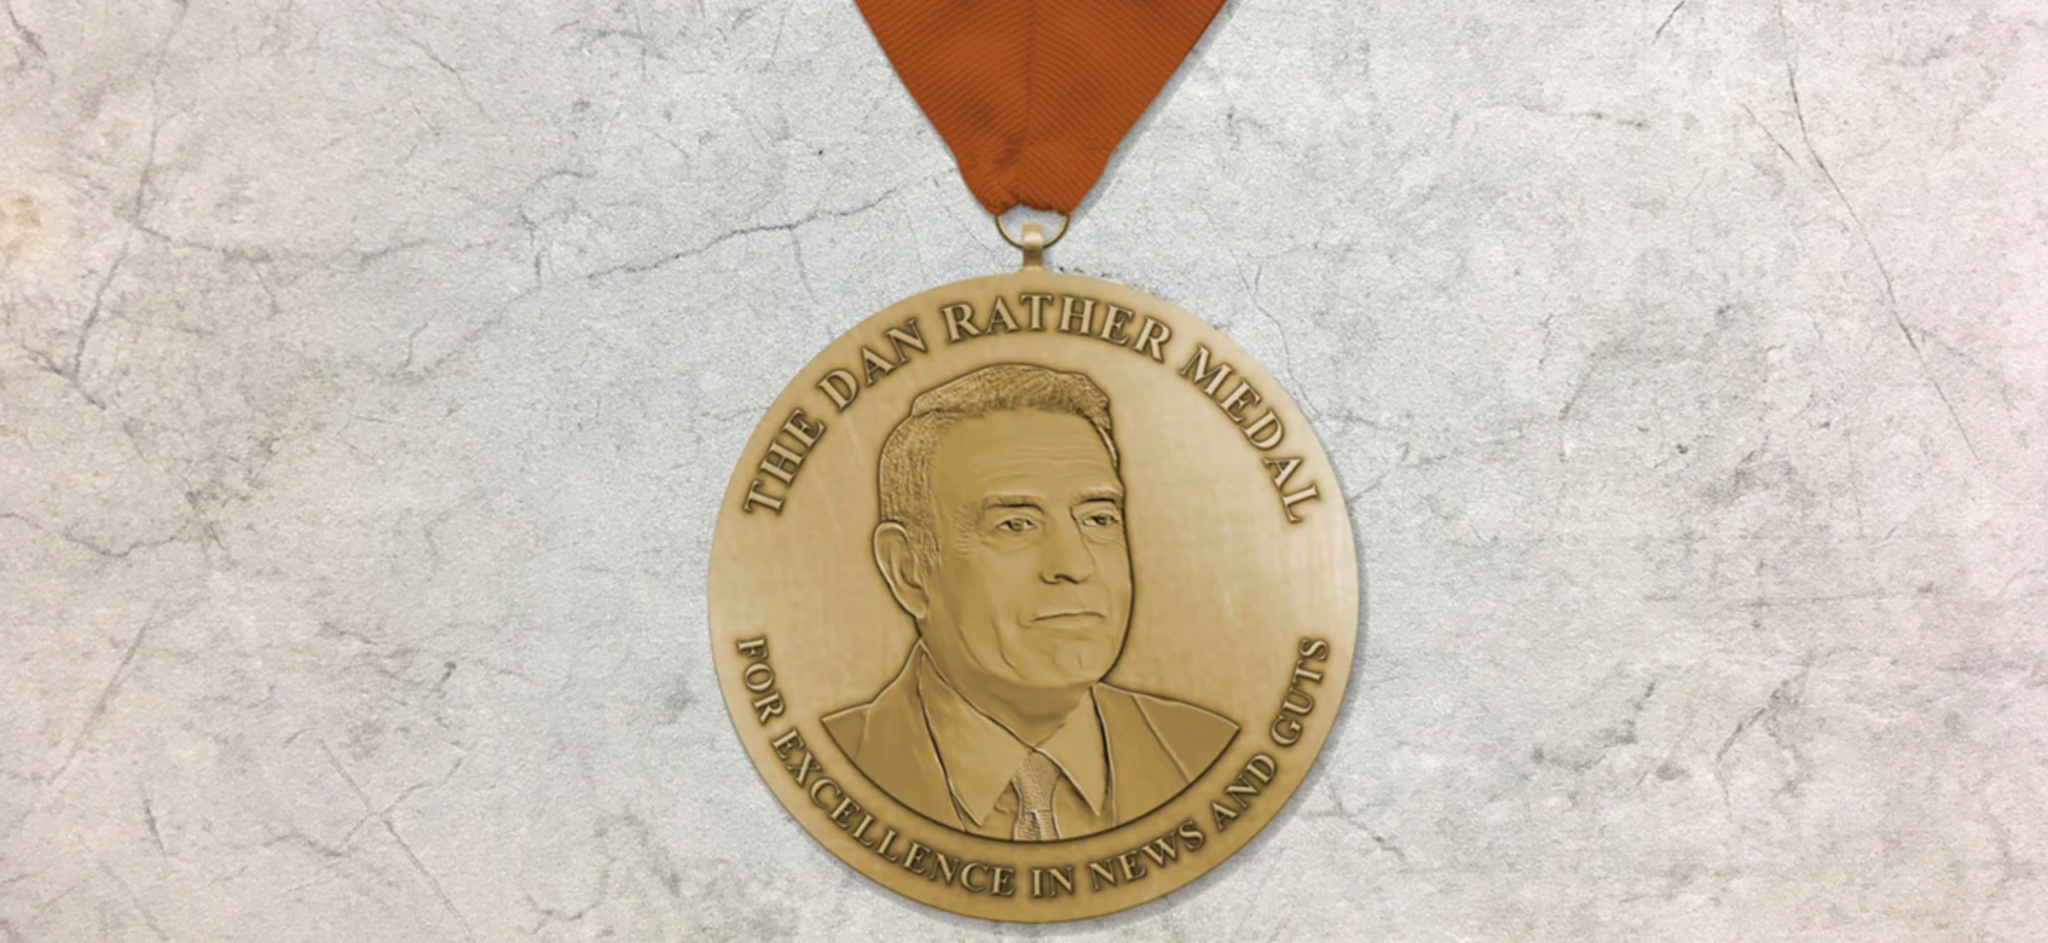 Dan Rather Medal